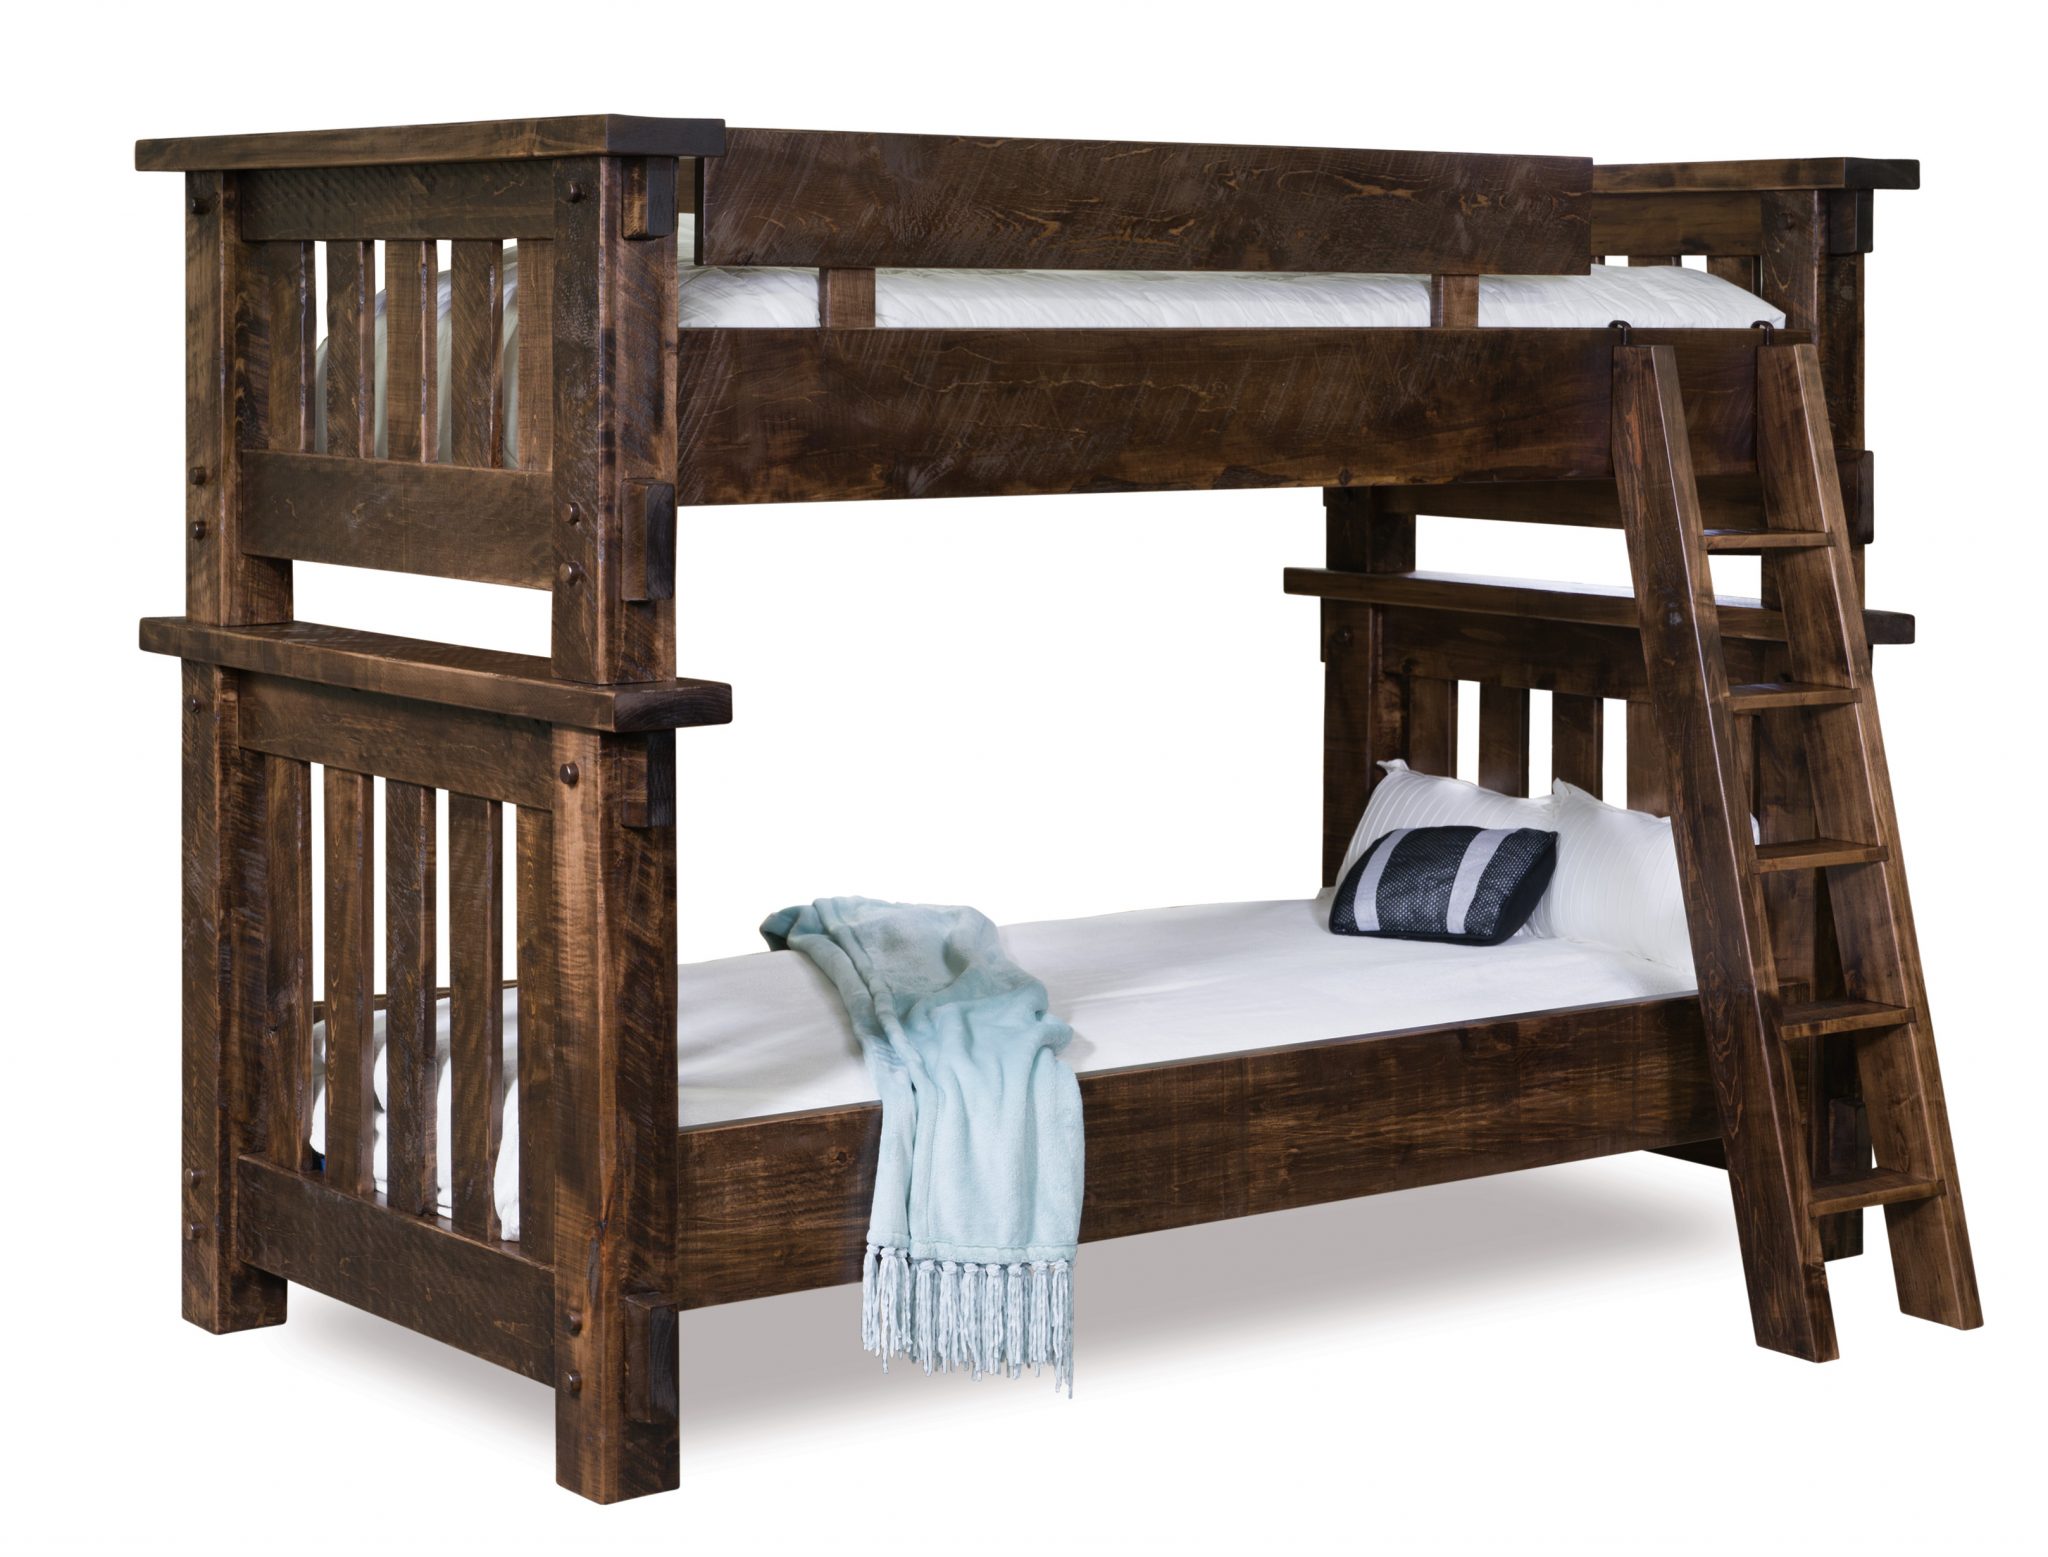 618 solid wood bunk bed bedroom furniture set